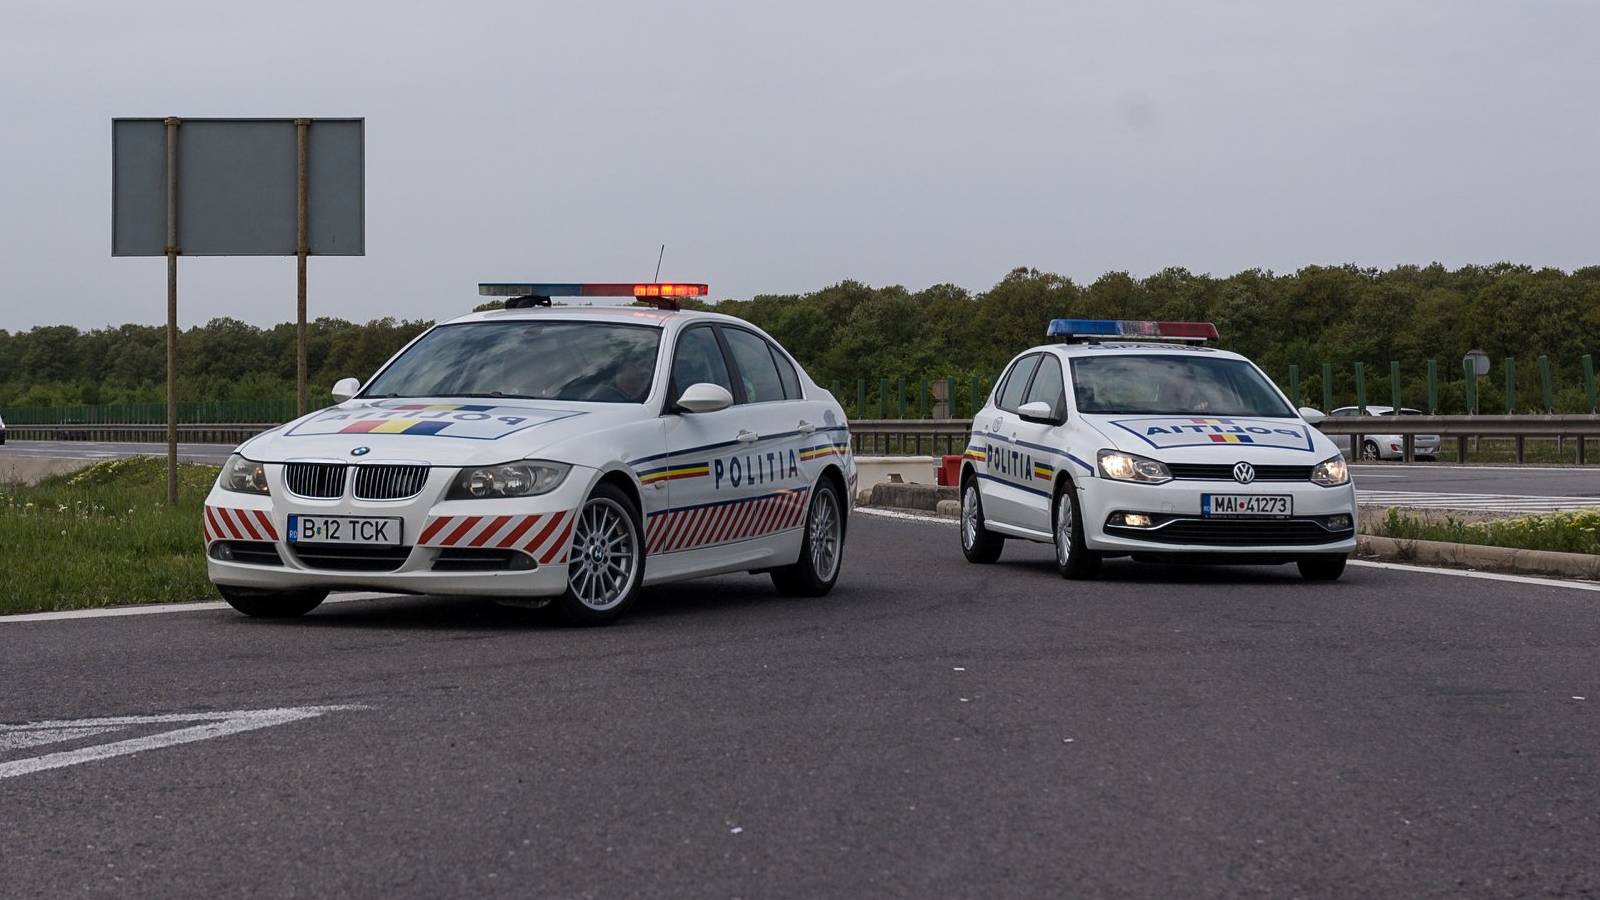 Romanian poliisin neuvoja kuljettajille